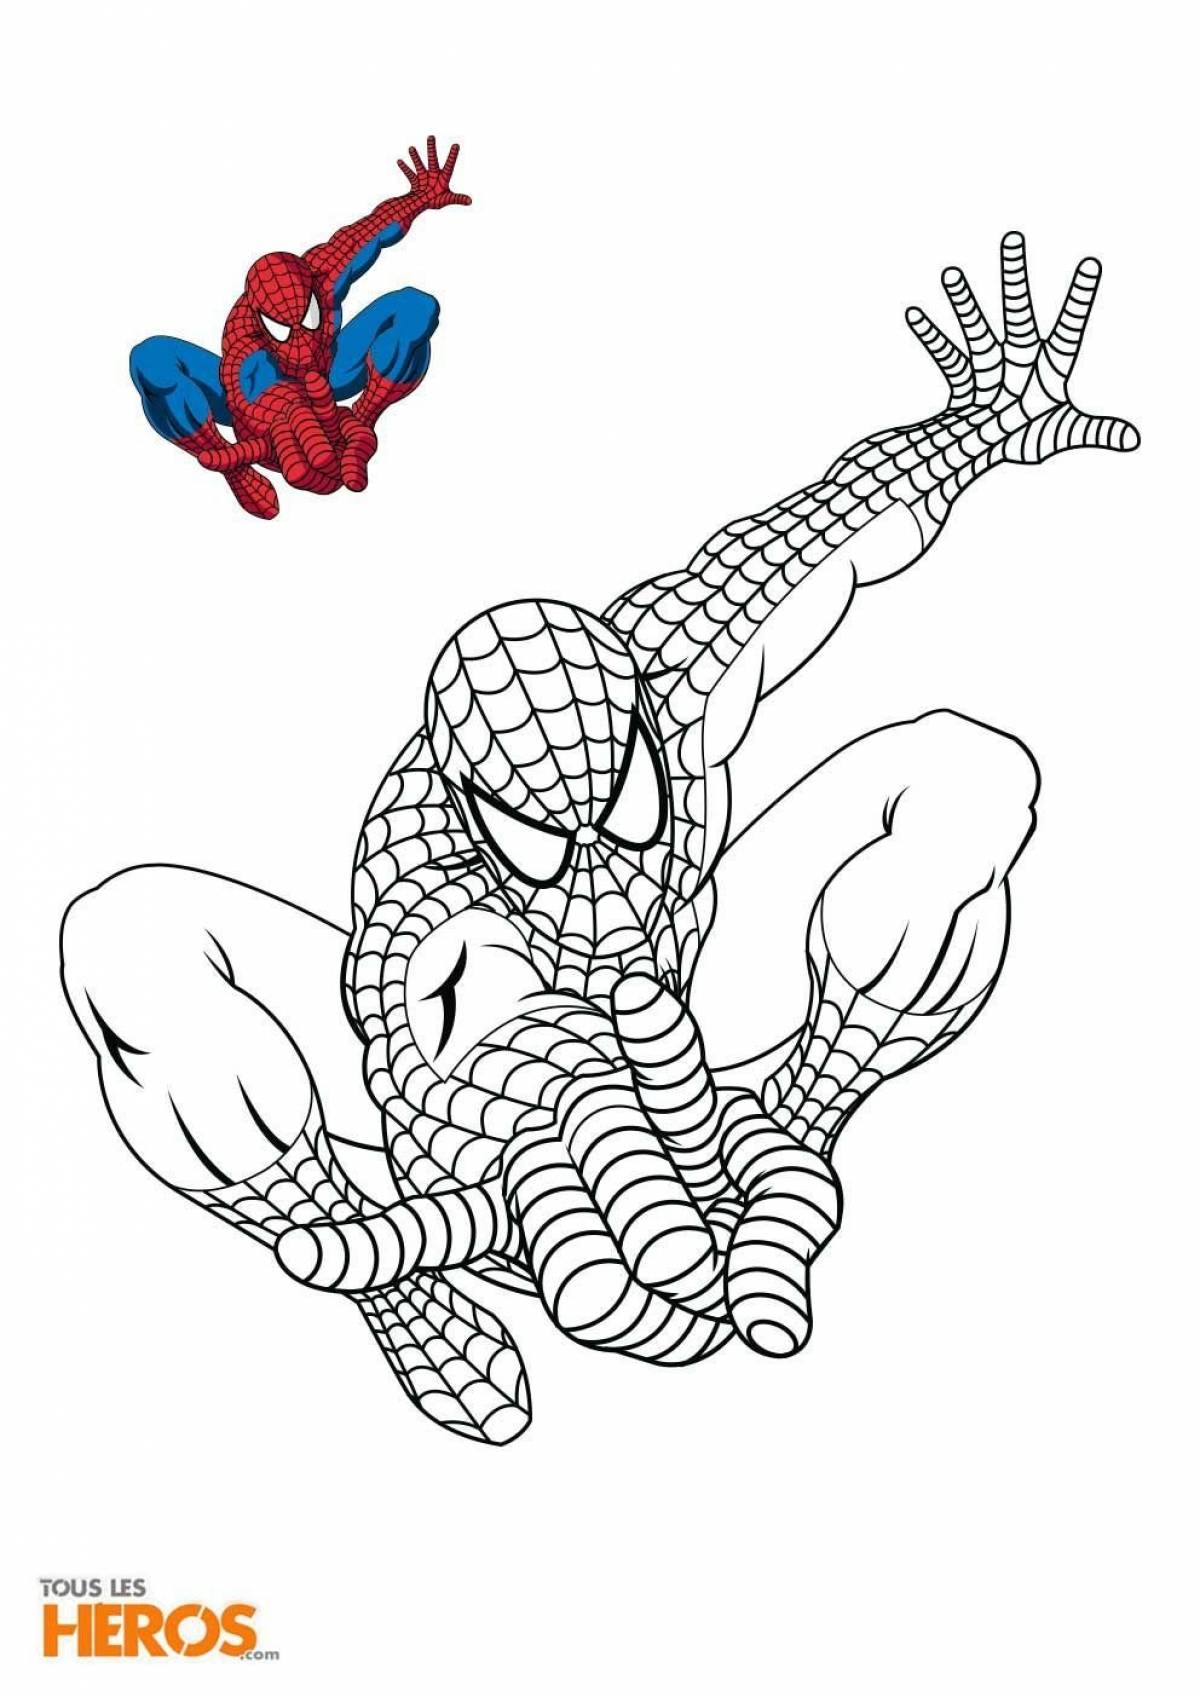 Spiderman colored #7